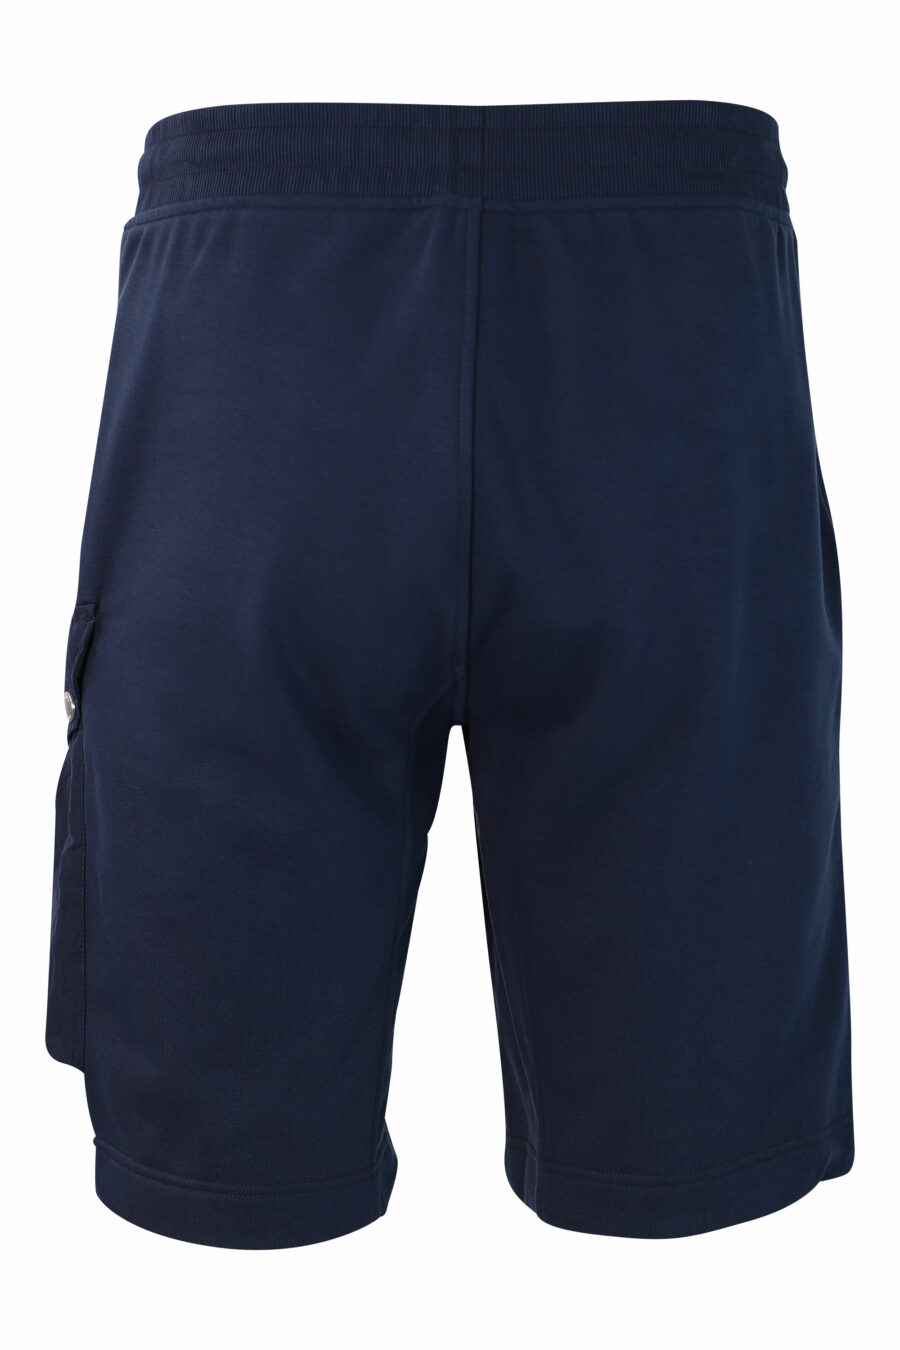 Pantalón de chándal corto azul con bolsillo lateral - IMG 9875 1